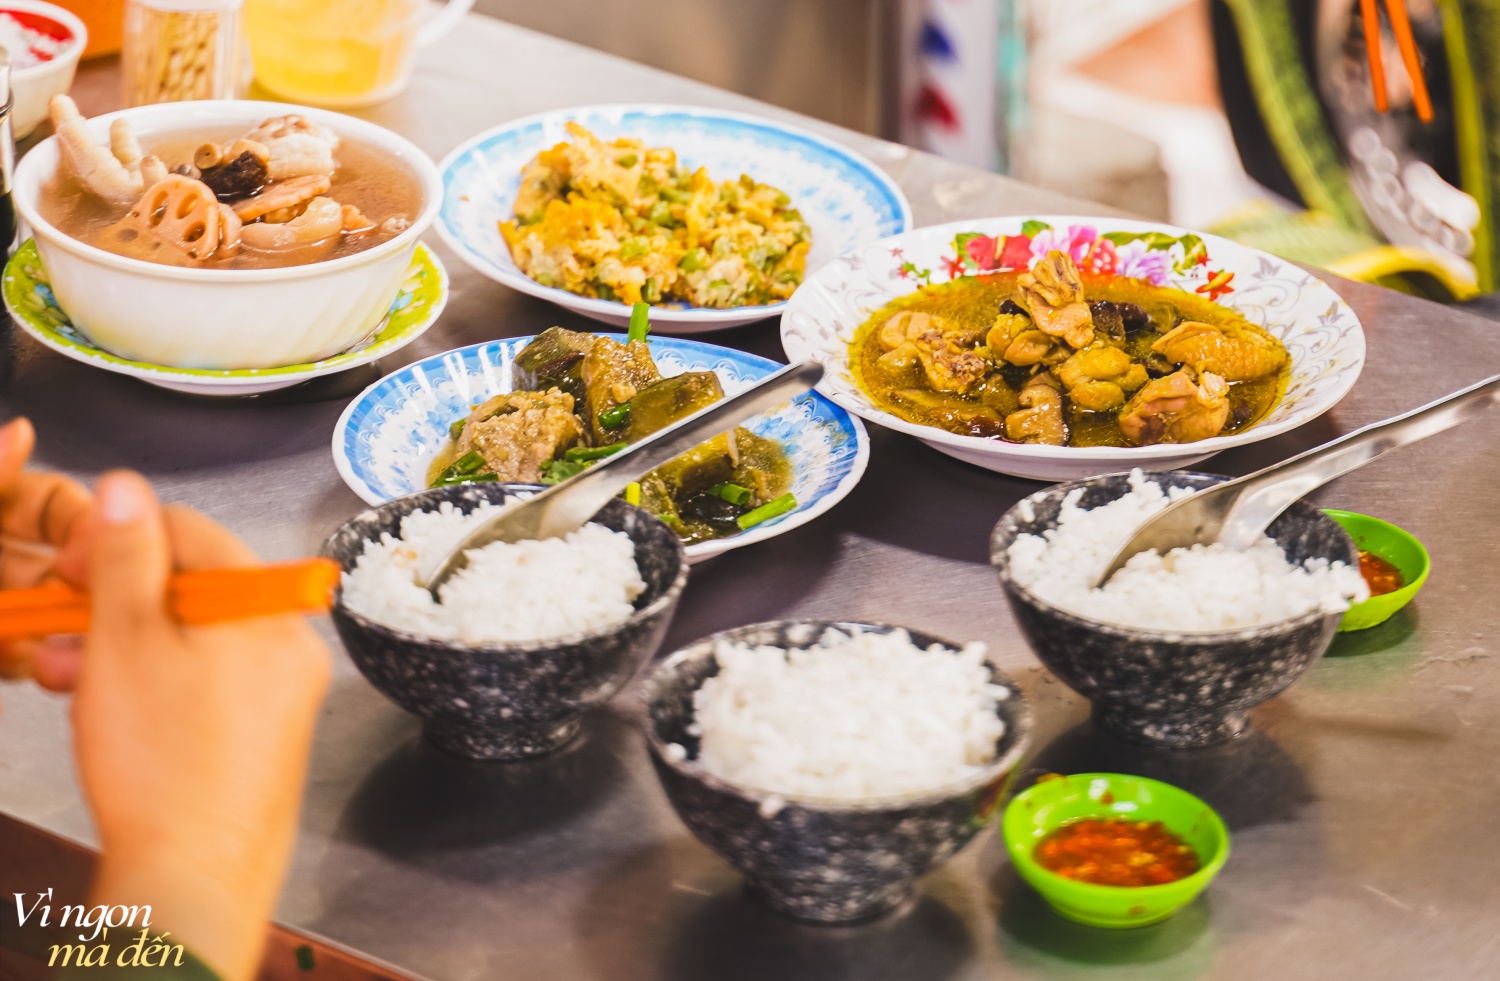 Đi ăn cơm bình dân kiểu người Hoa: Cửa tiệm bán 3 đời mỗi ngày nấu hơn 30 món cầu kỳ, đông khách đến nỗi không dám mở trên ứng dụng giao đồ ăn- Ảnh 13.